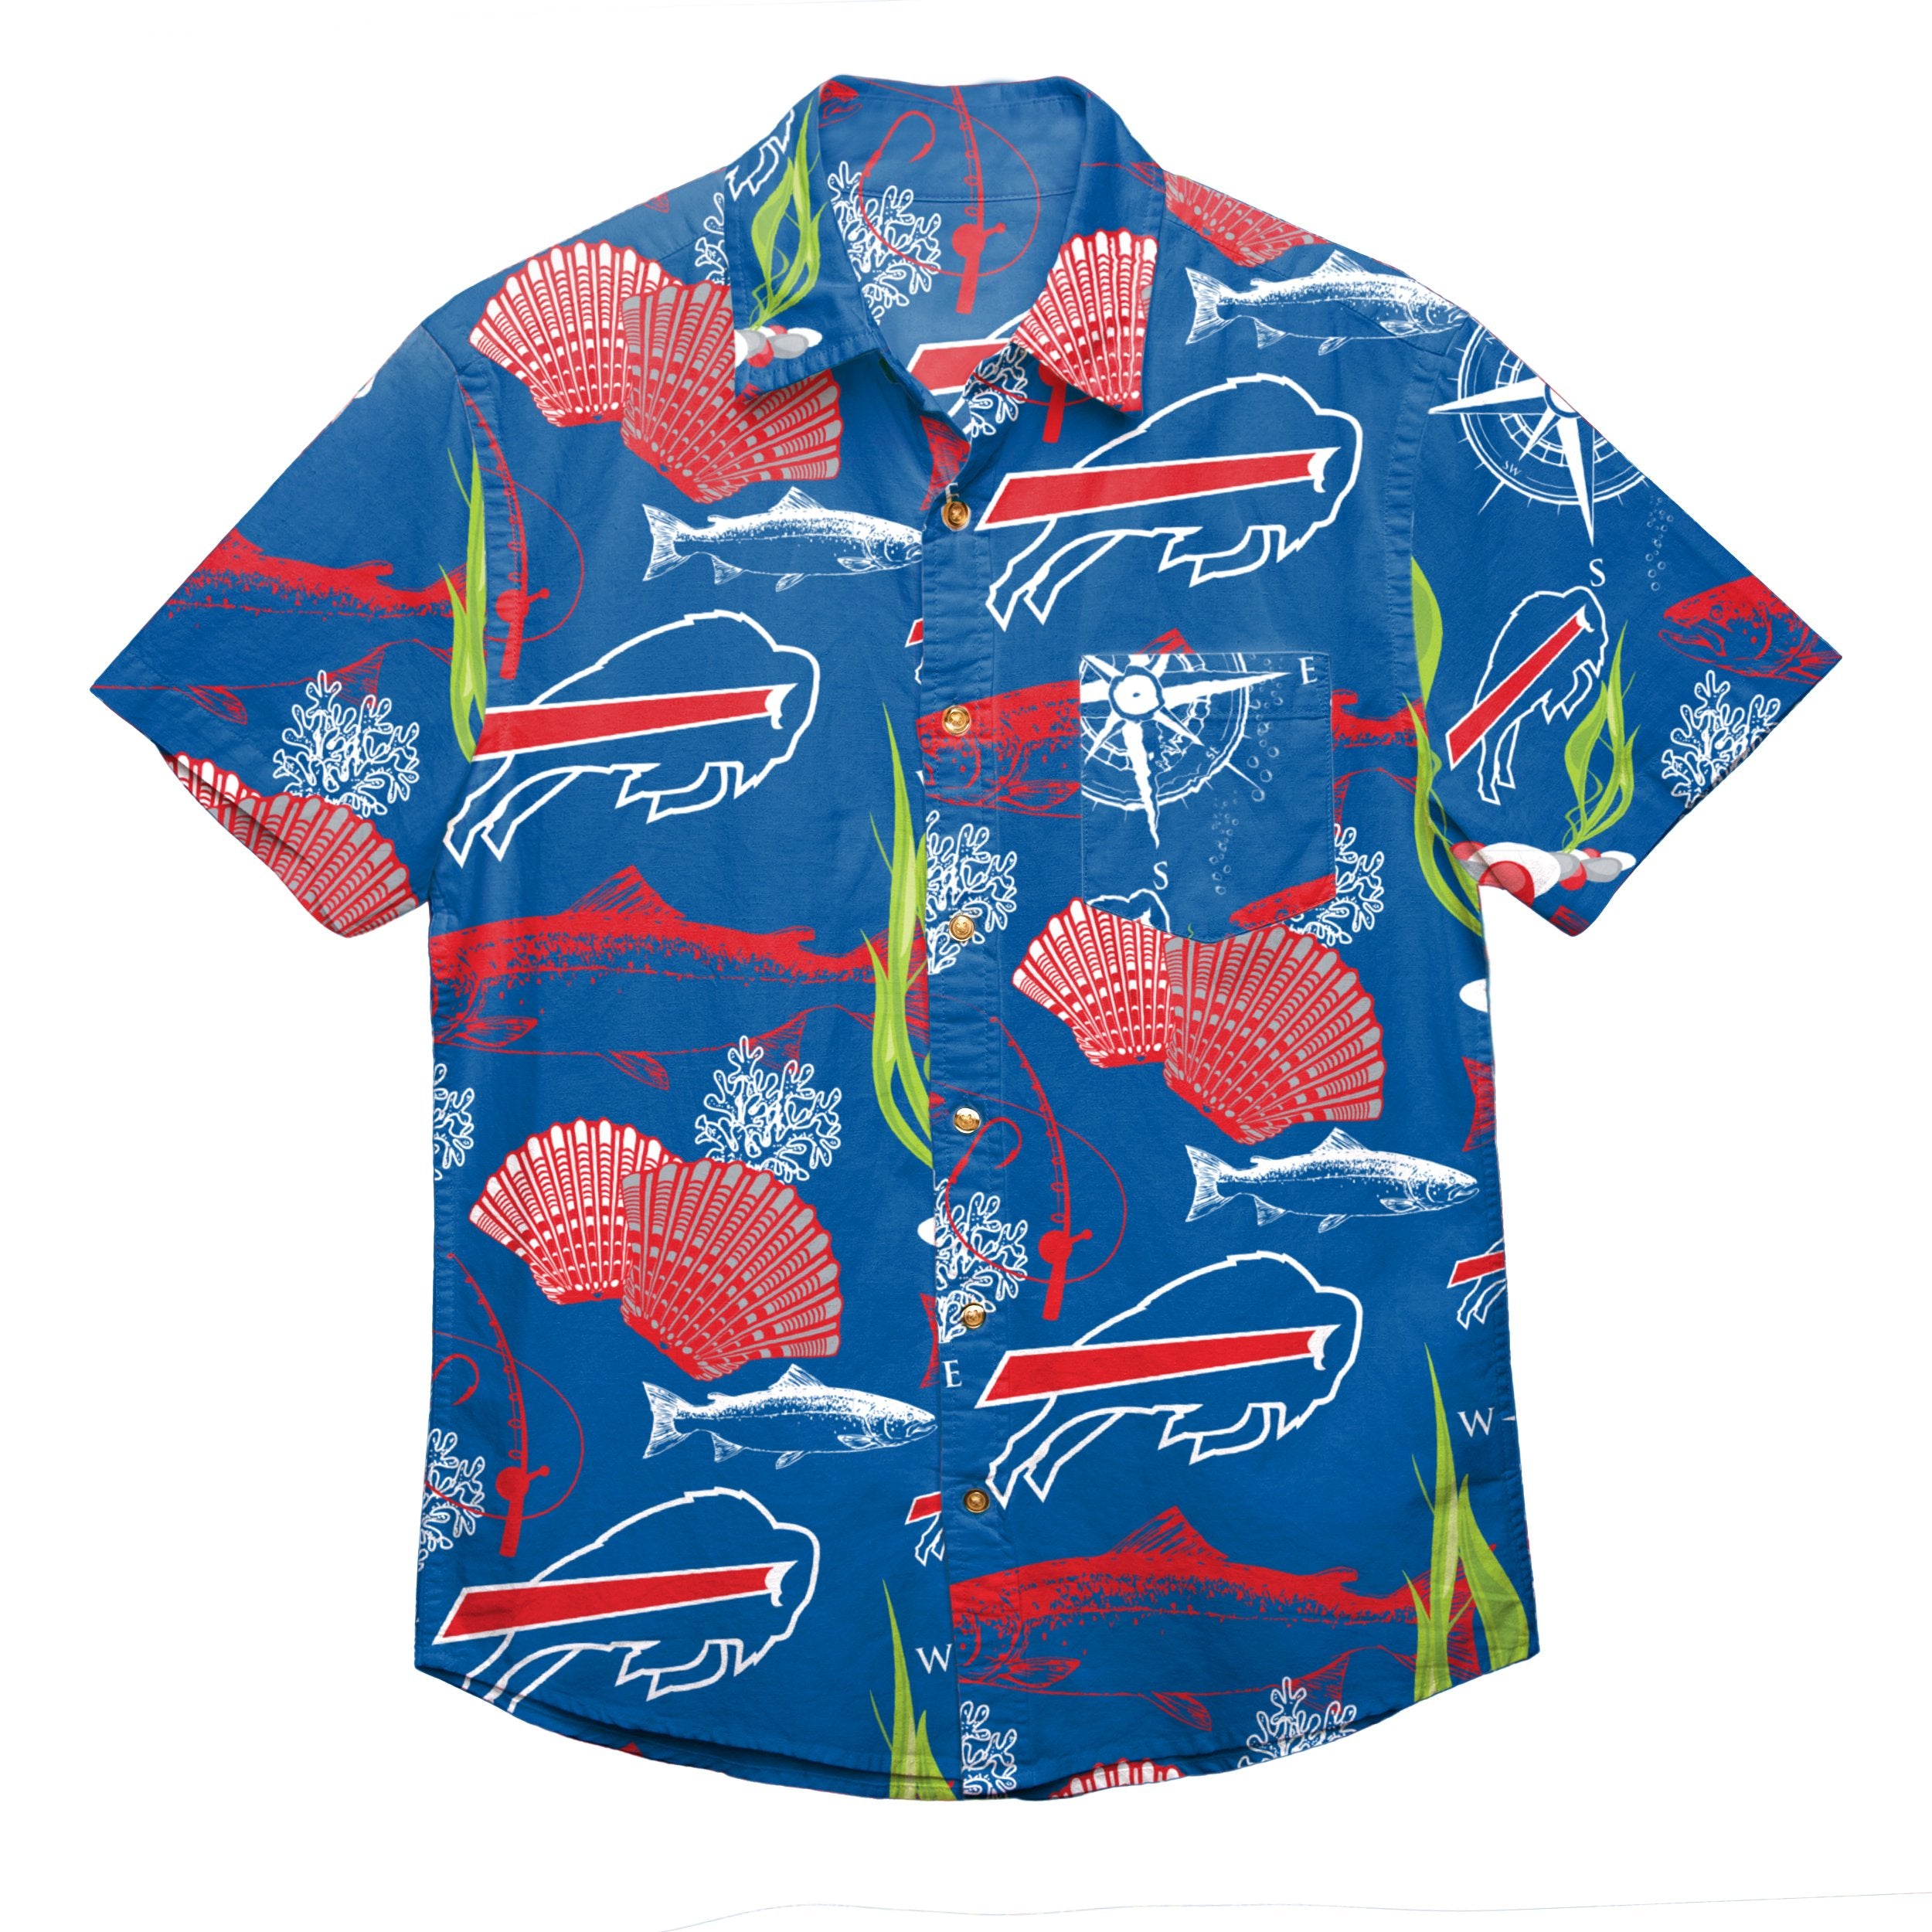 FOCO Buffalo Bills NFL Mens Floral Button Up Shirt